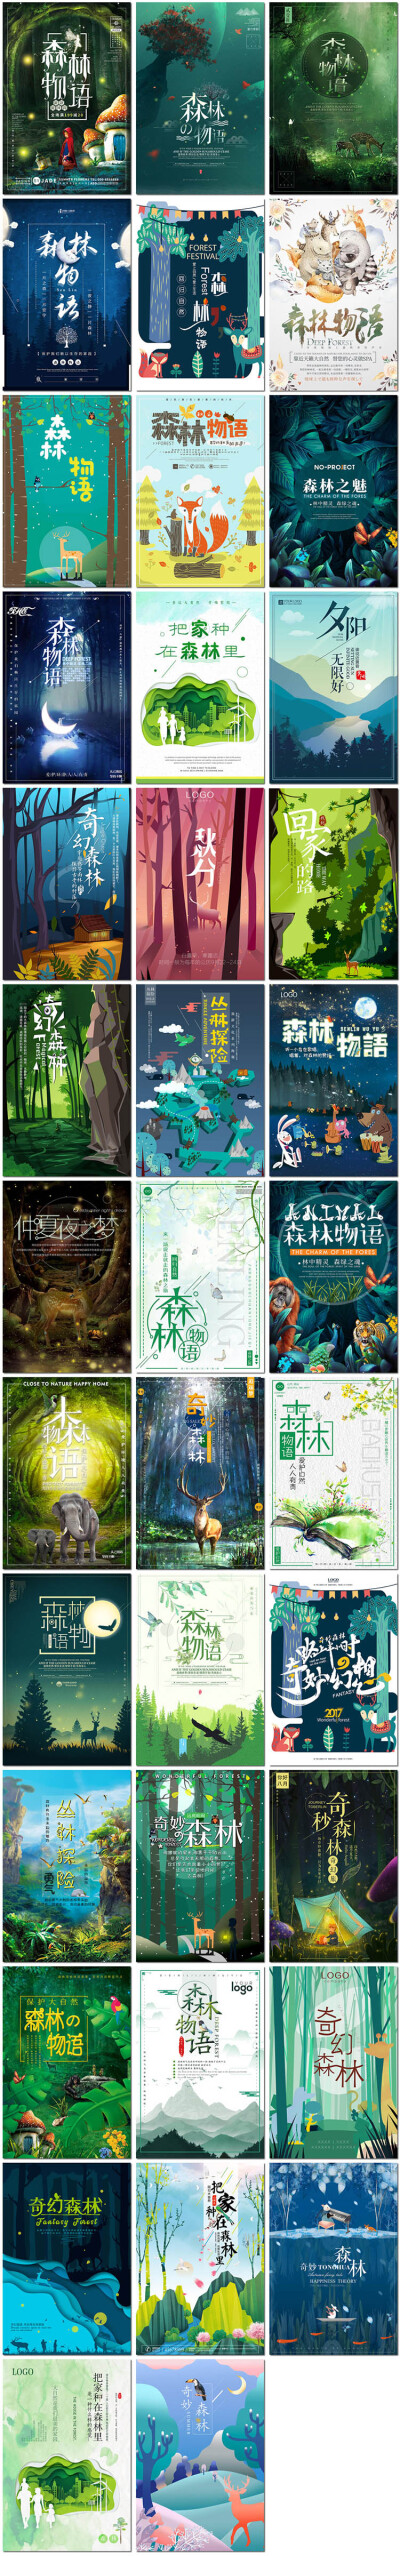 森林物语树木森系大自然小动物卡通童话插画海报设计psd模板素材